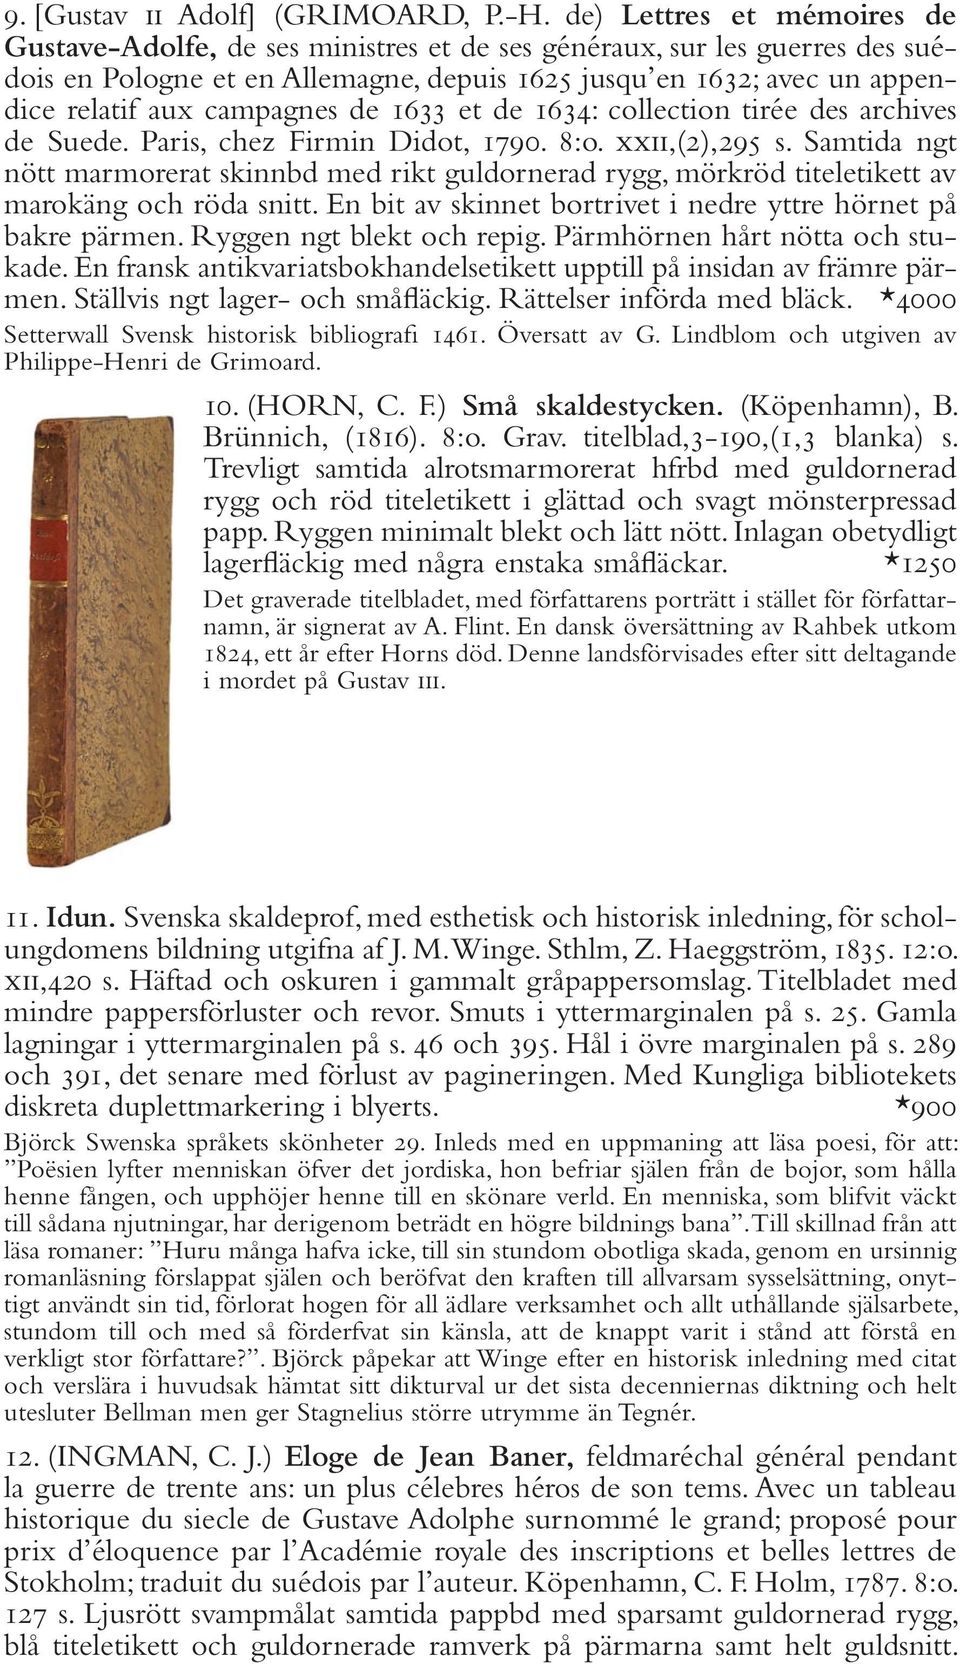 campagnes de 1633 et de 1634: collection tirée des archives de Suede. Paris, chez Firmin Didot, 1790. 8:o. xxii,(2),295 s.